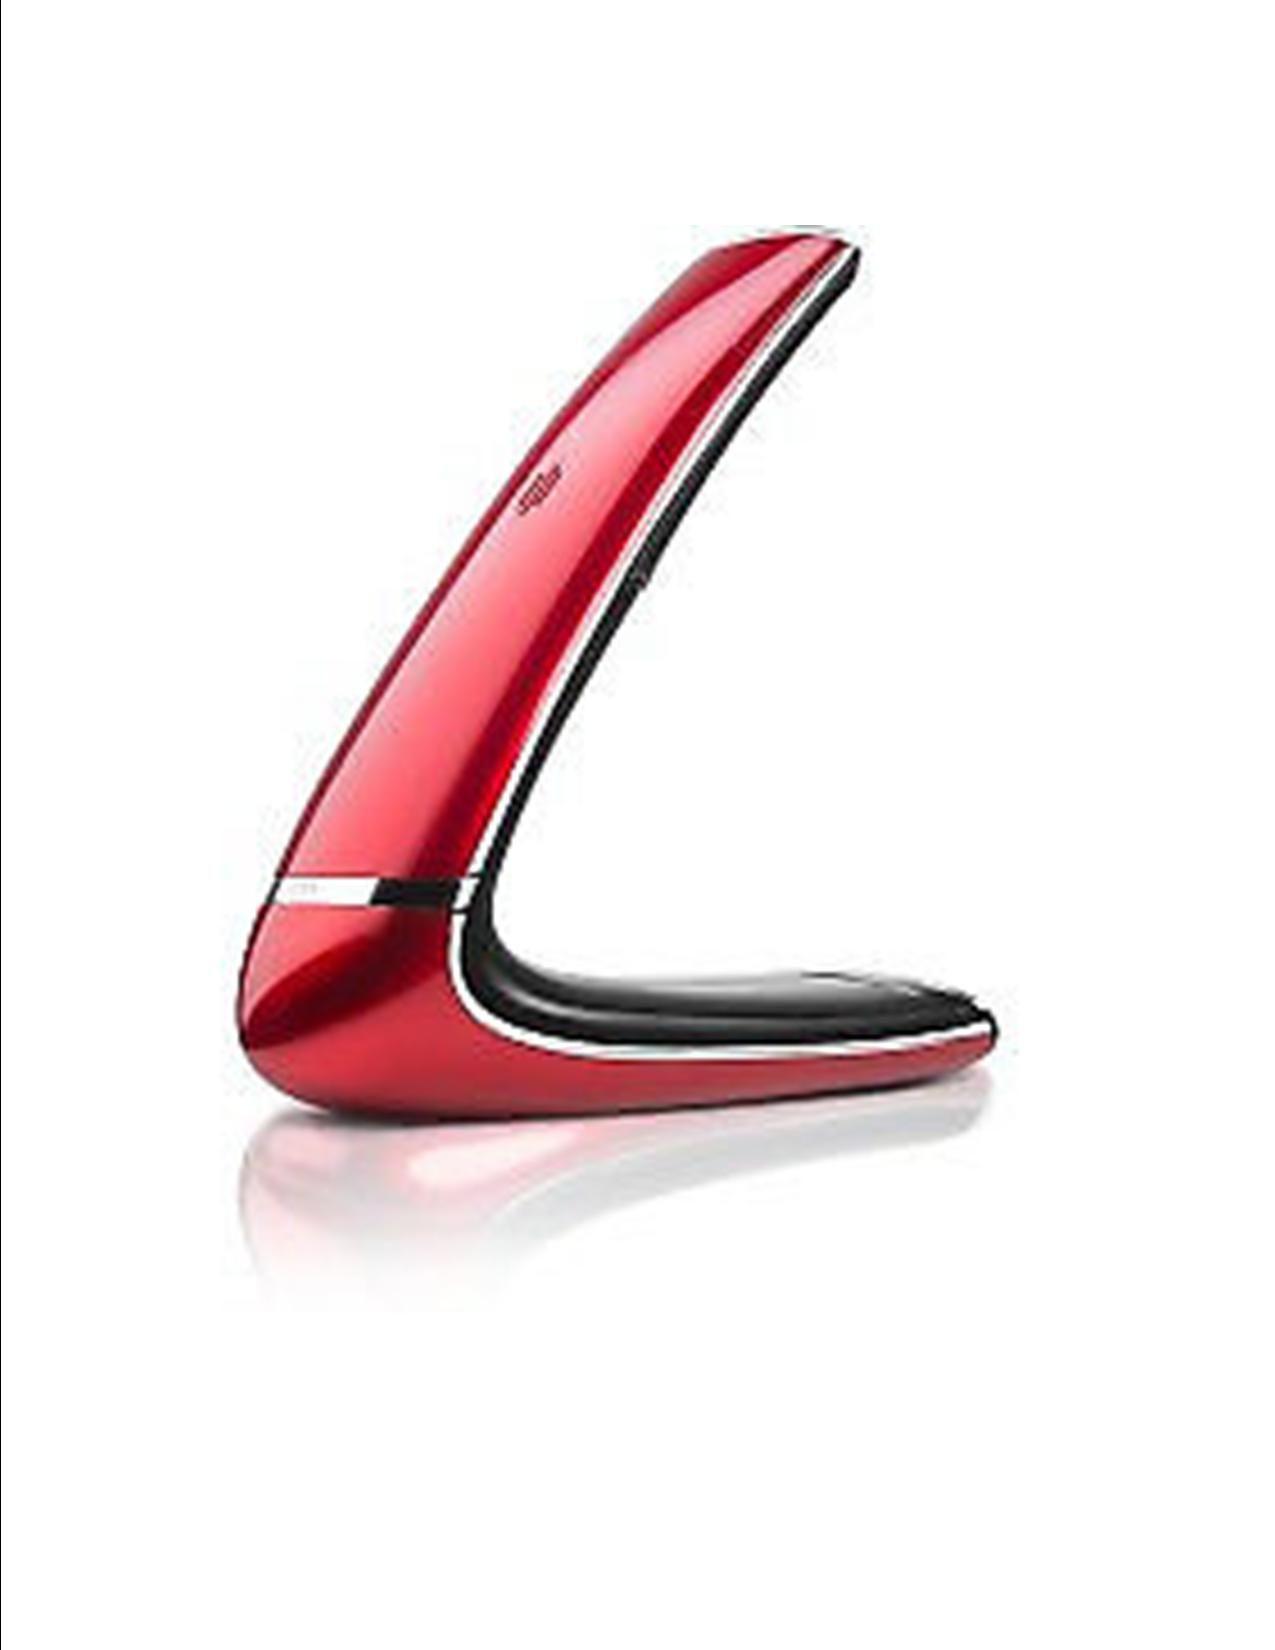 Metal Boomerang Logo - AEG Boomerang 10 Metallic Red/White- Brand New at Low Cost | Junk Mail